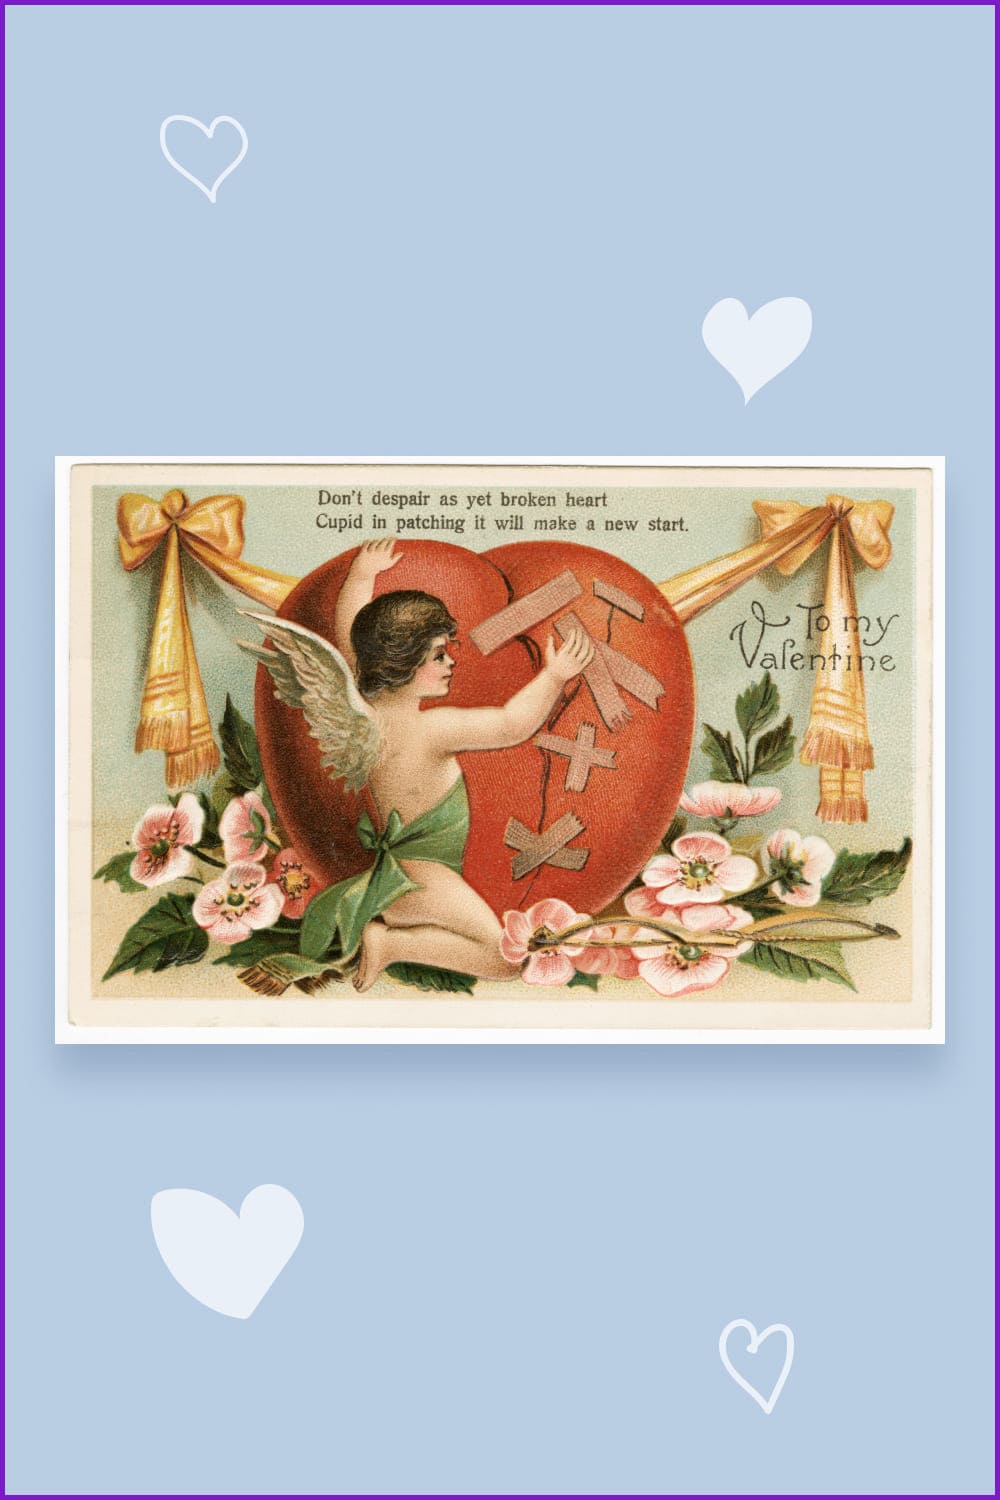 Cupid mends a broken heart.